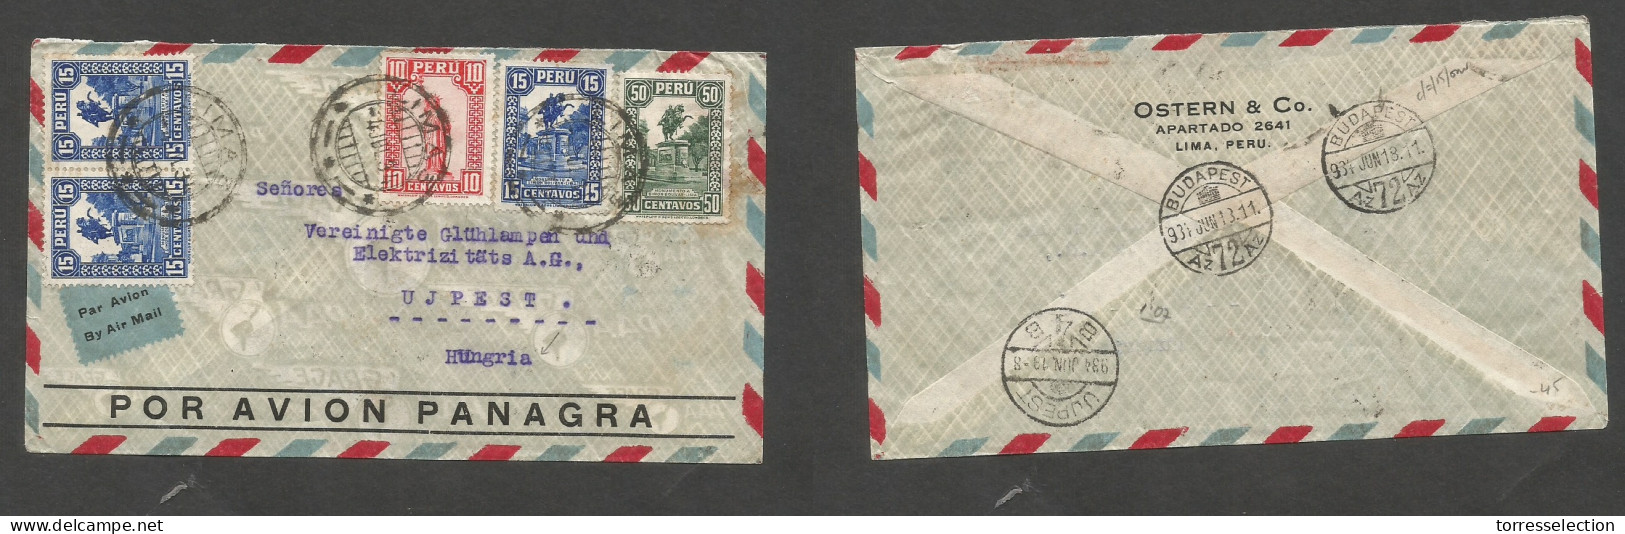 PERU. 1934 (4 June) Lima - Hungary, Ujpest (13 June) Air Multifkd Env, At 1,05 Ps Rate. VF + Air Label. SALE. - Perù